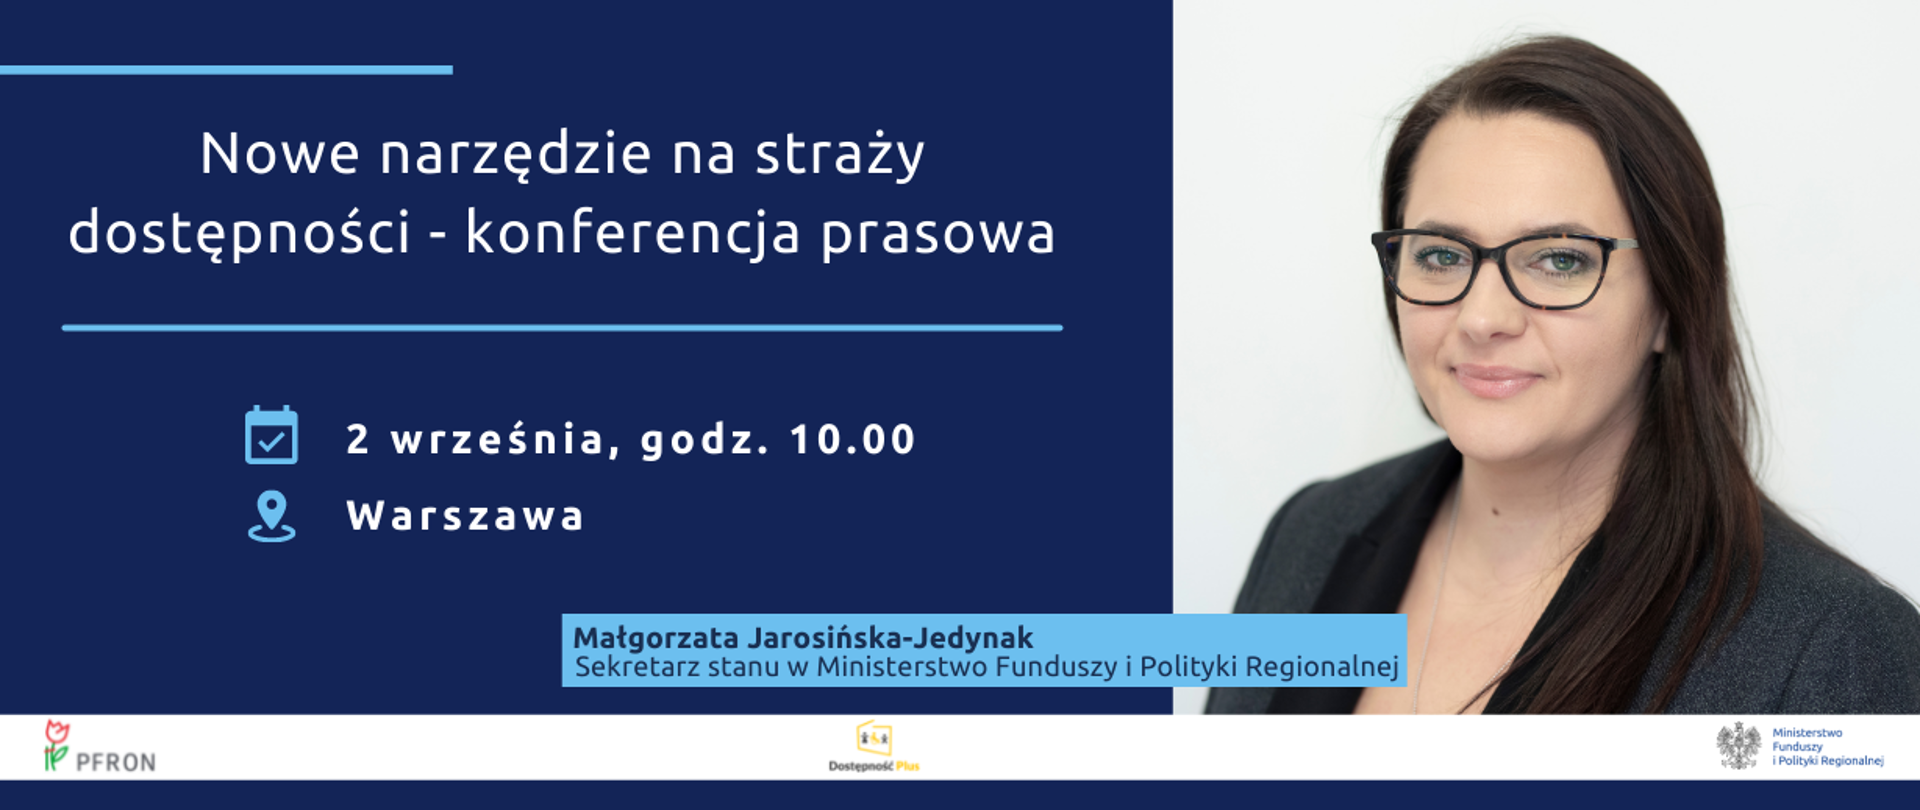 Zdjęcie portretowe minister Małgorzaty Jarosińskiej-Jedynak, obok napis: Nowe narzędzie na straży dostępności - konferencja prasowa, 2 września, godzina 10, Warszawa